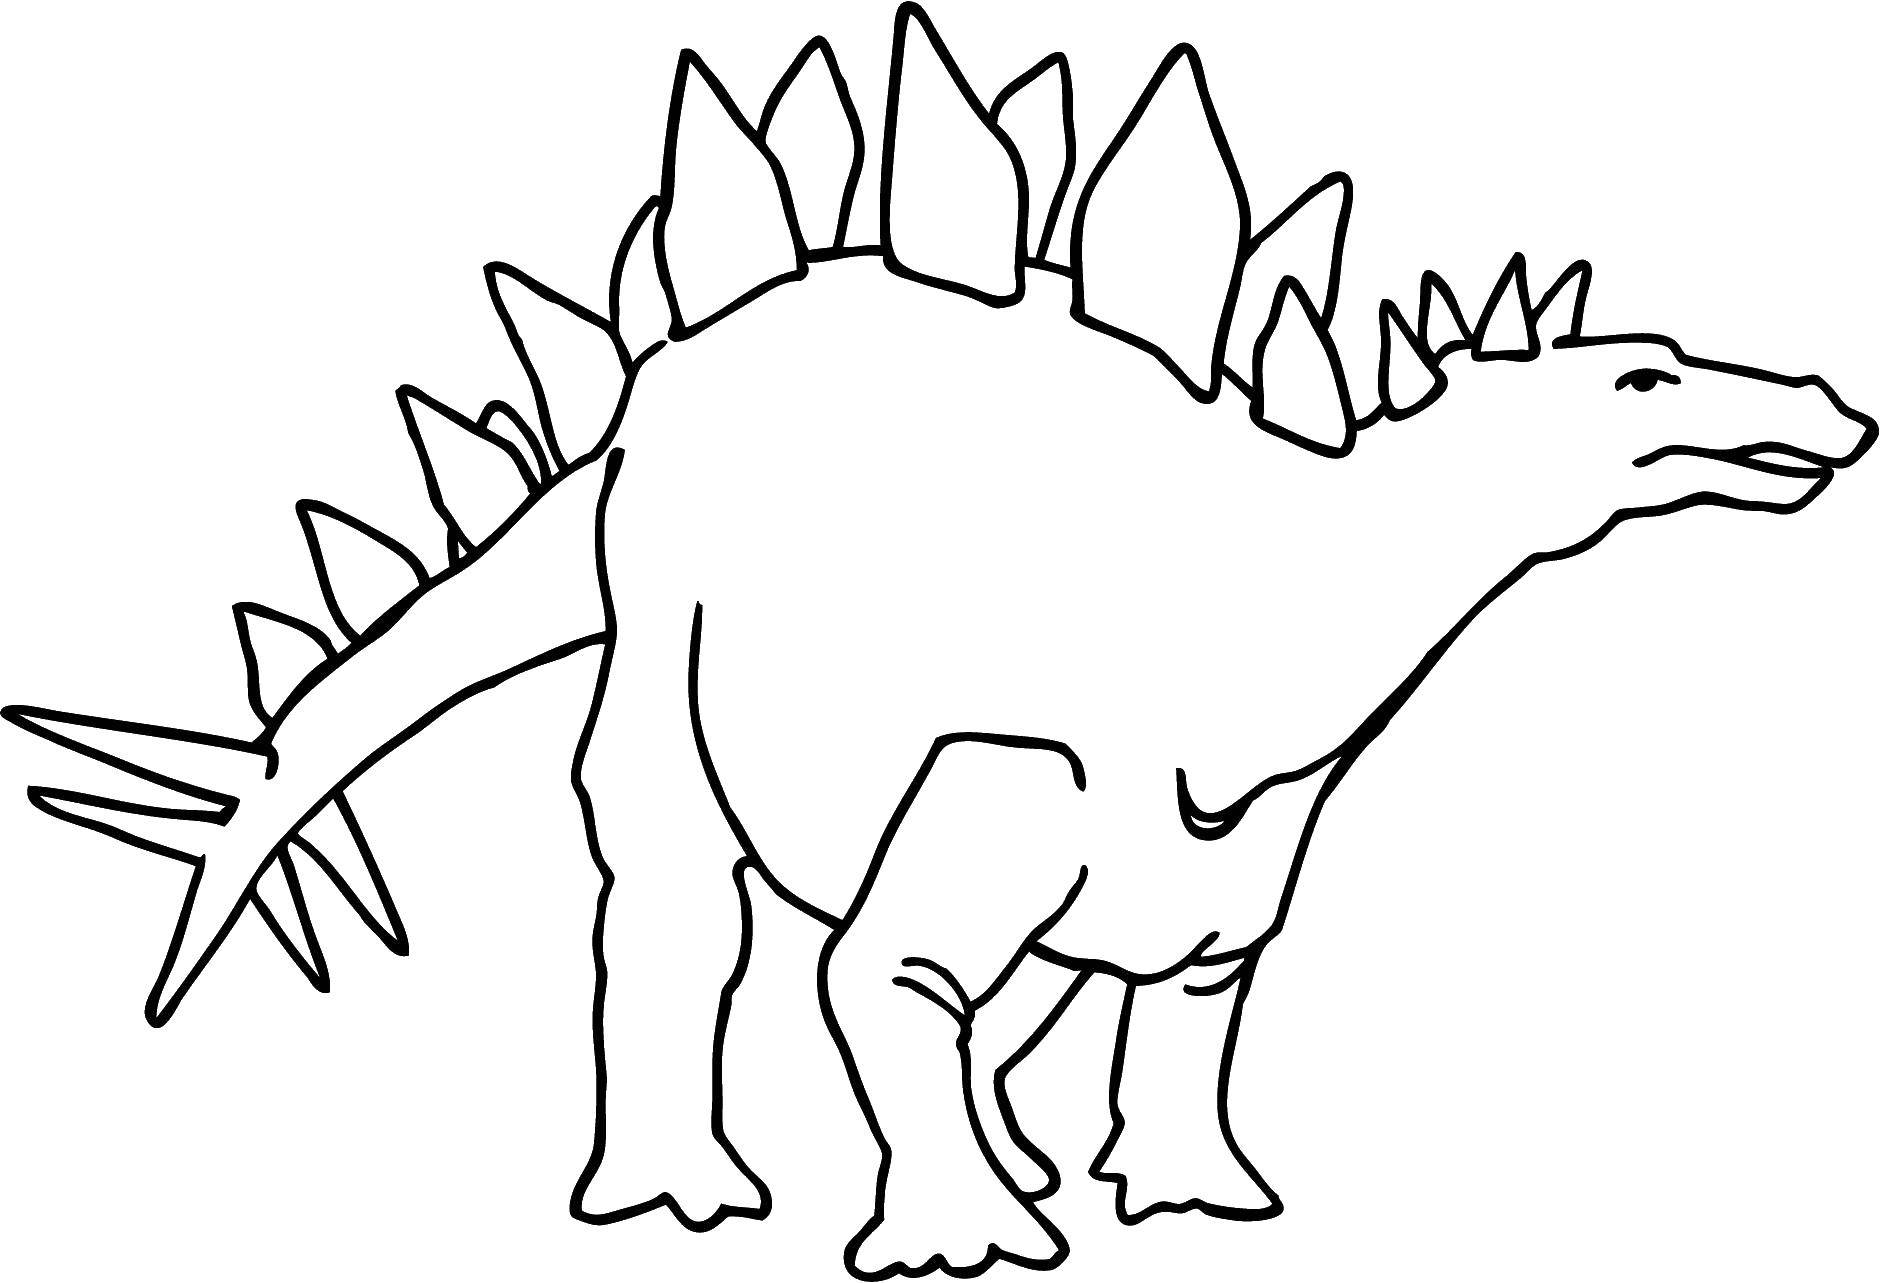 Coloring Dinosaur. Category dinosaur. Tags:  dinosaurs, dinosaur.